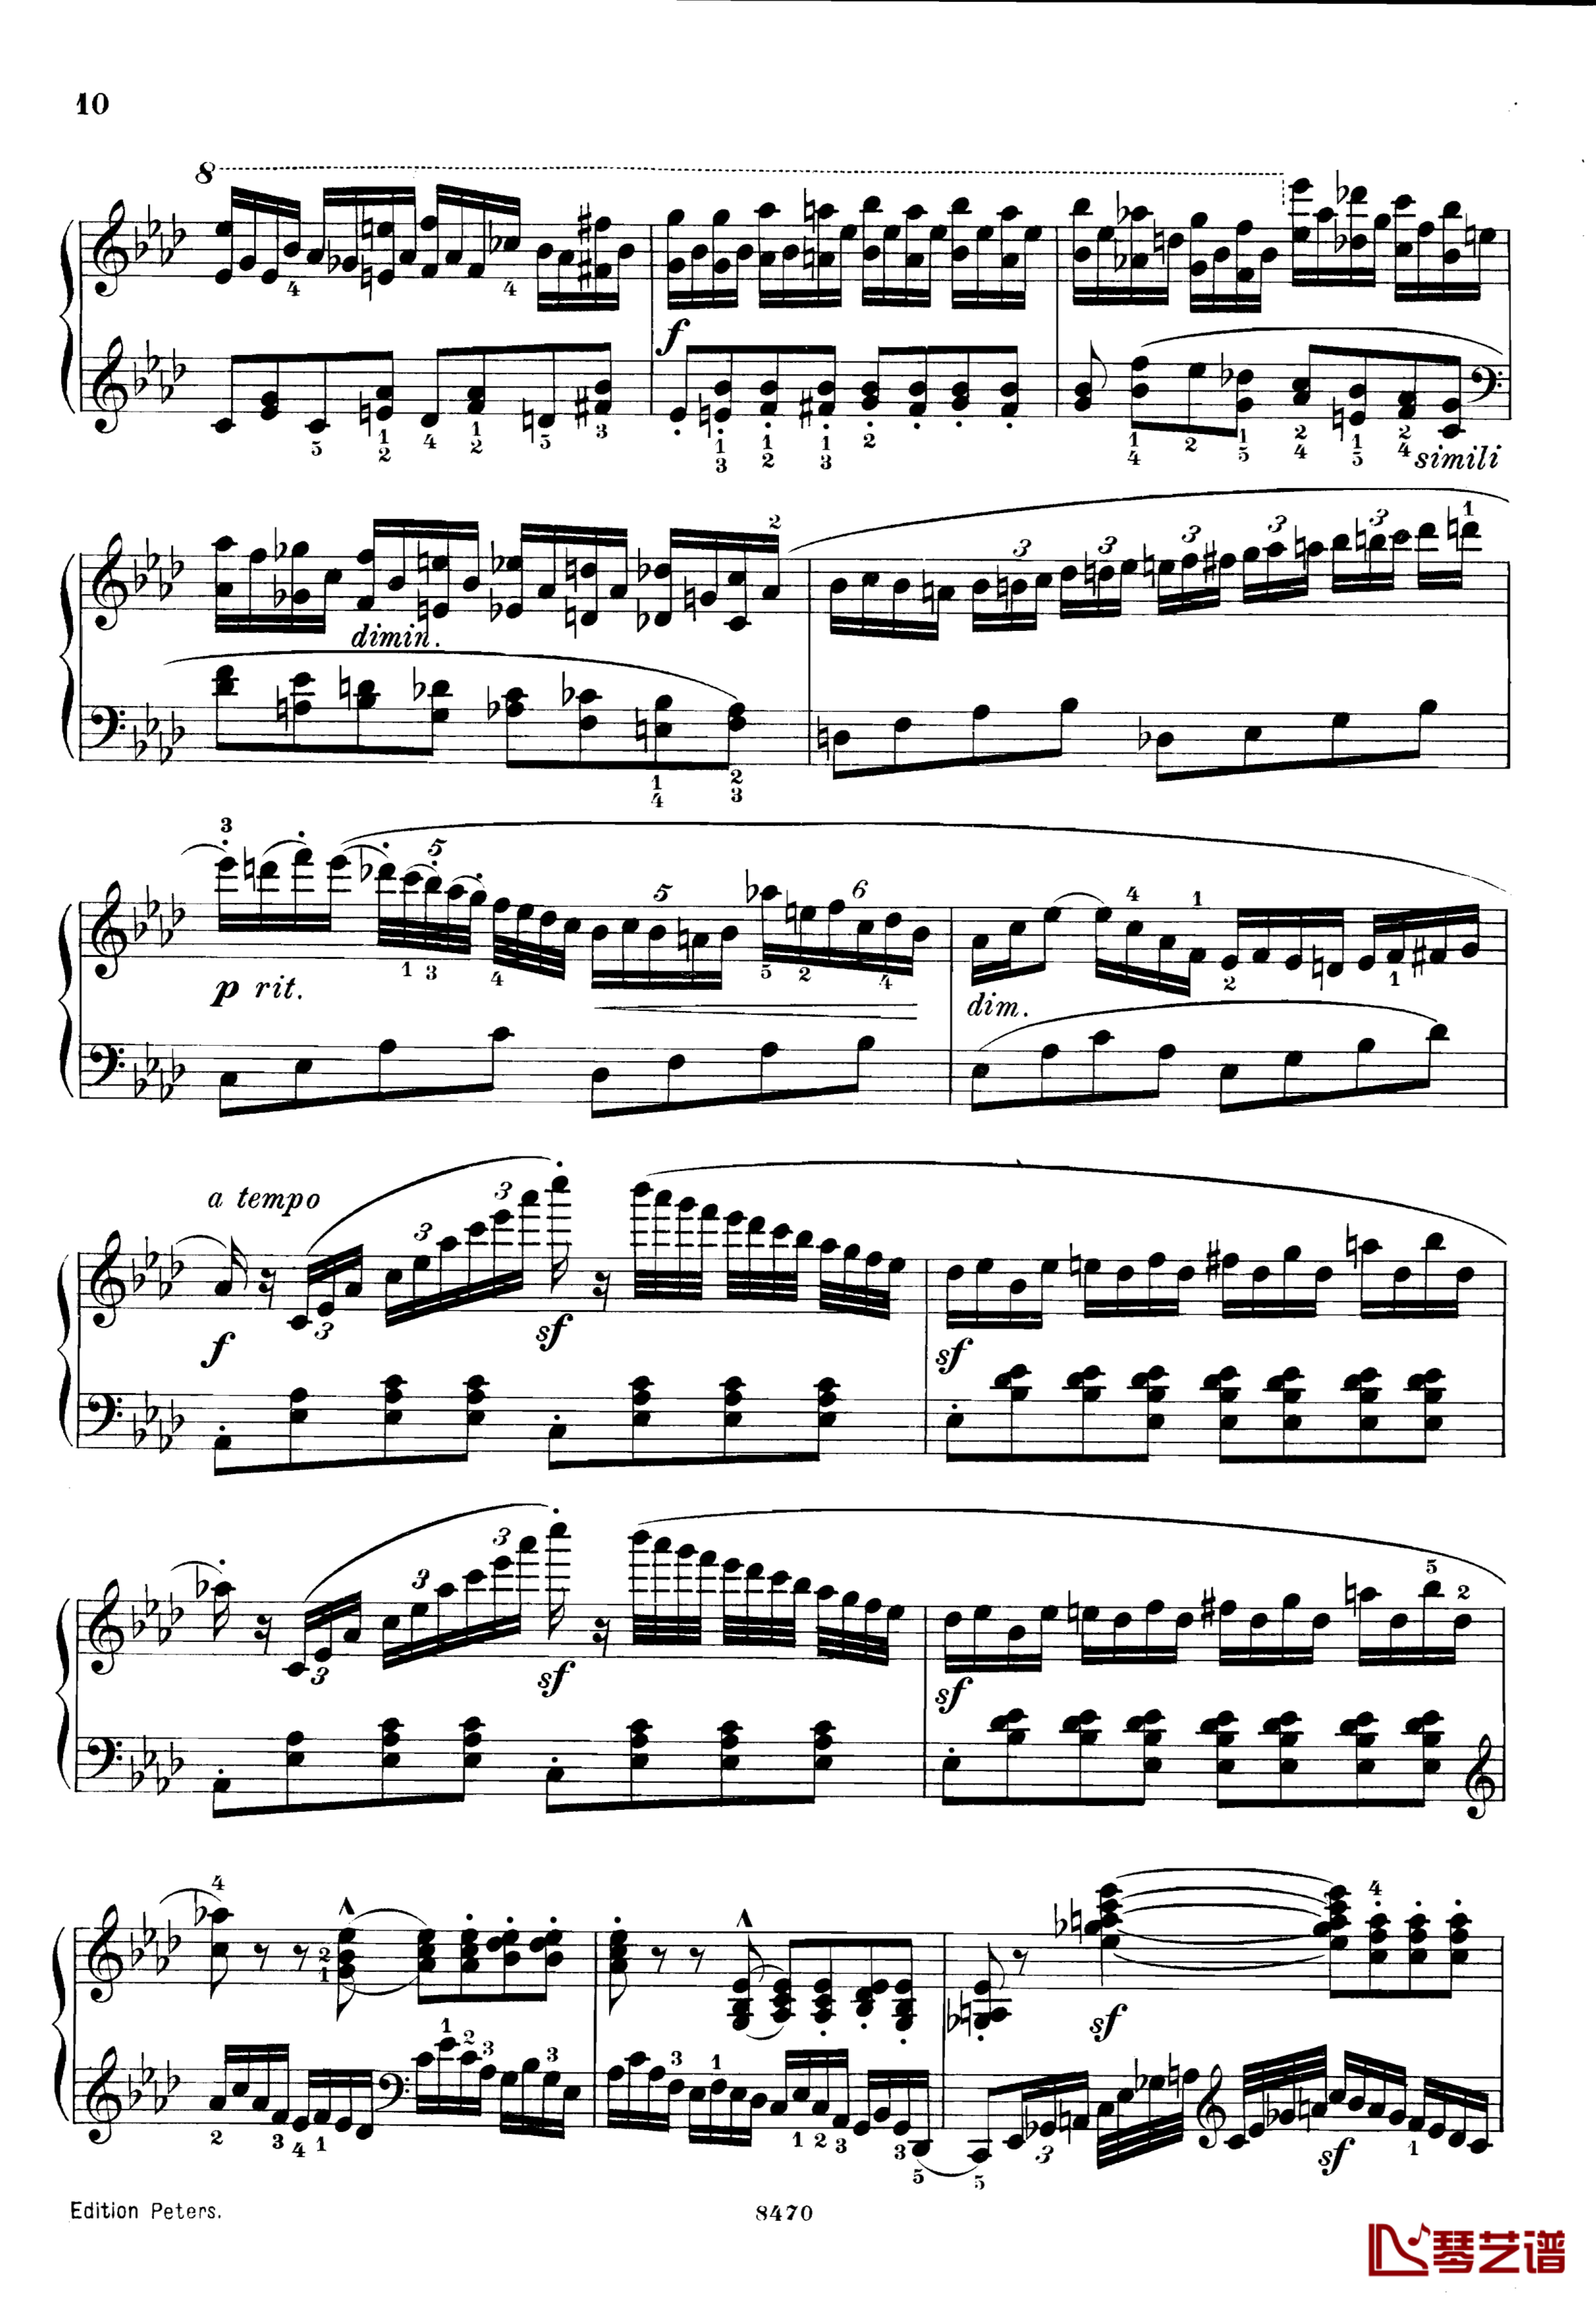 升c小调第三钢琴协奏曲Op.55钢琴谱-克里斯蒂安-里斯10